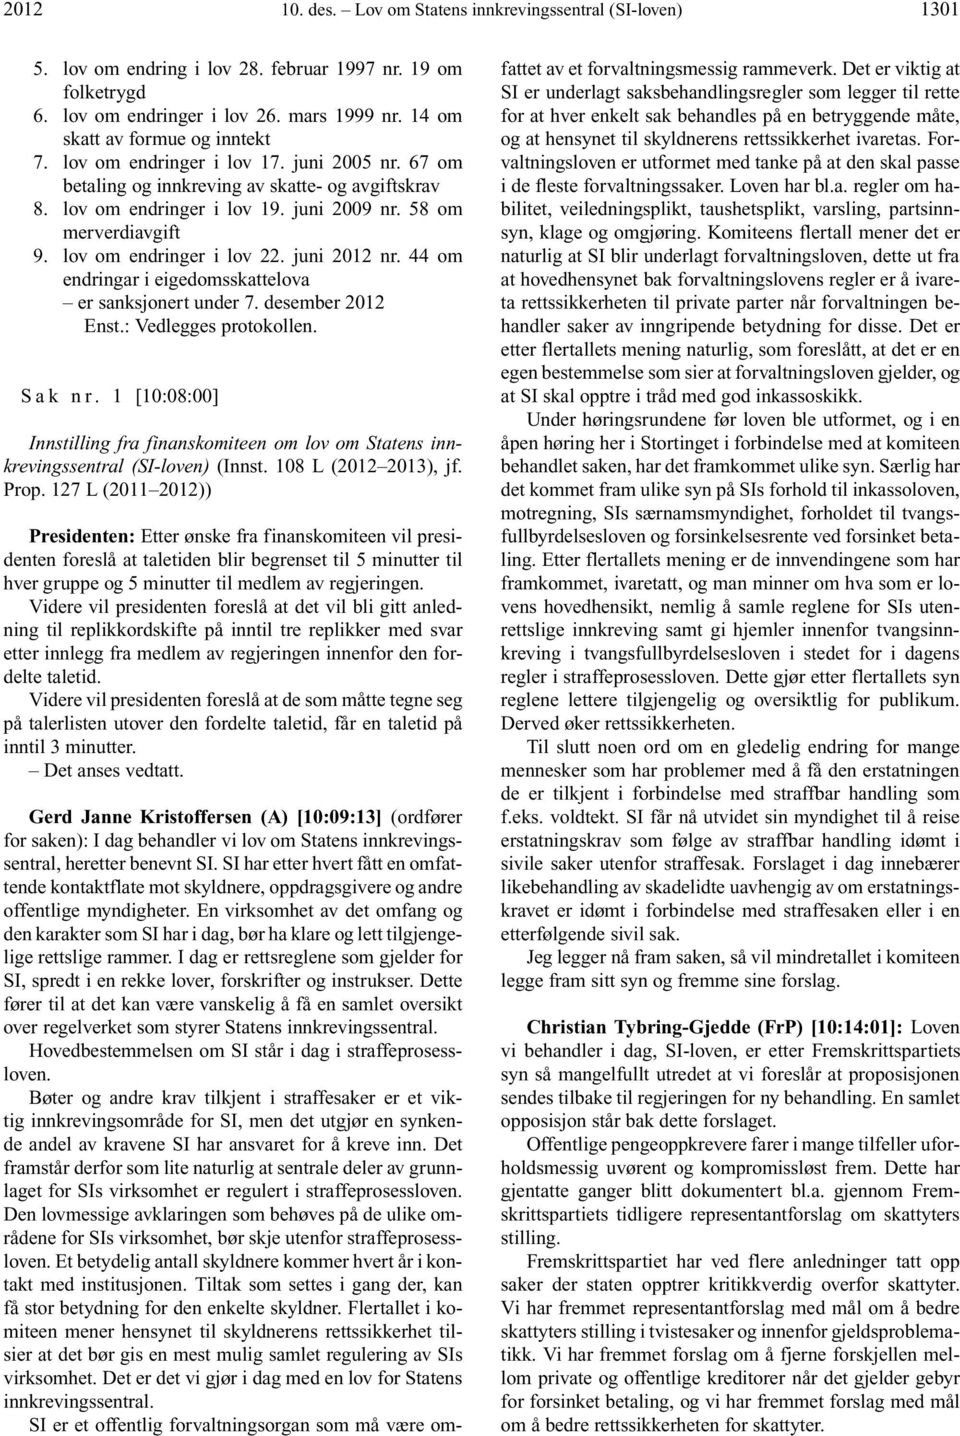 lov om endringer i lov 22. juni 2012 nr. 44 om endringar i eigedomsskattelova er sanksjonert under 7. desember 2012 Enst.: Vedlegges protokollen. S a k n r.